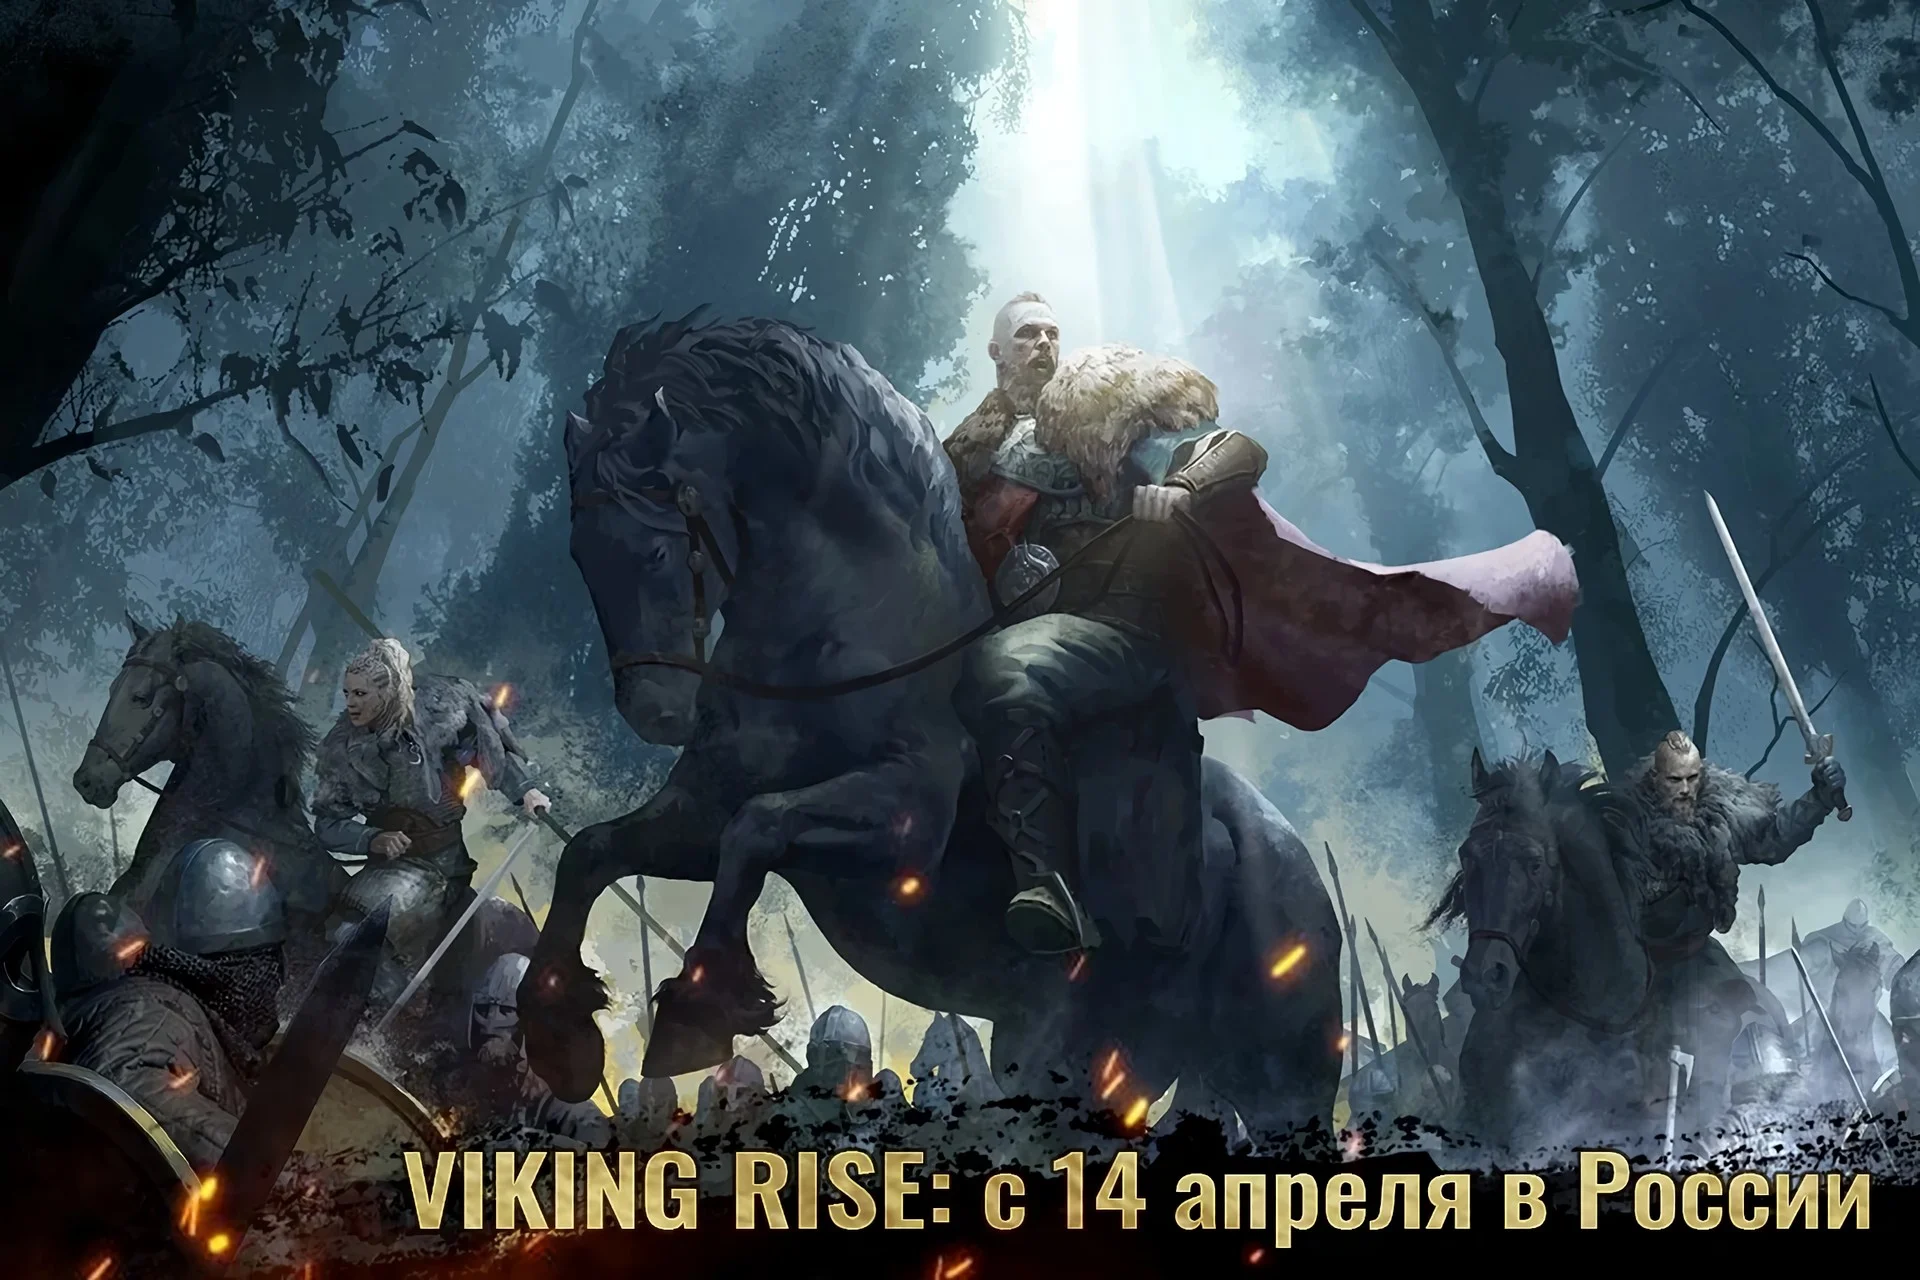 Сражайтесь в стиле викингов в новой стратегии Viking Rise | Канобу